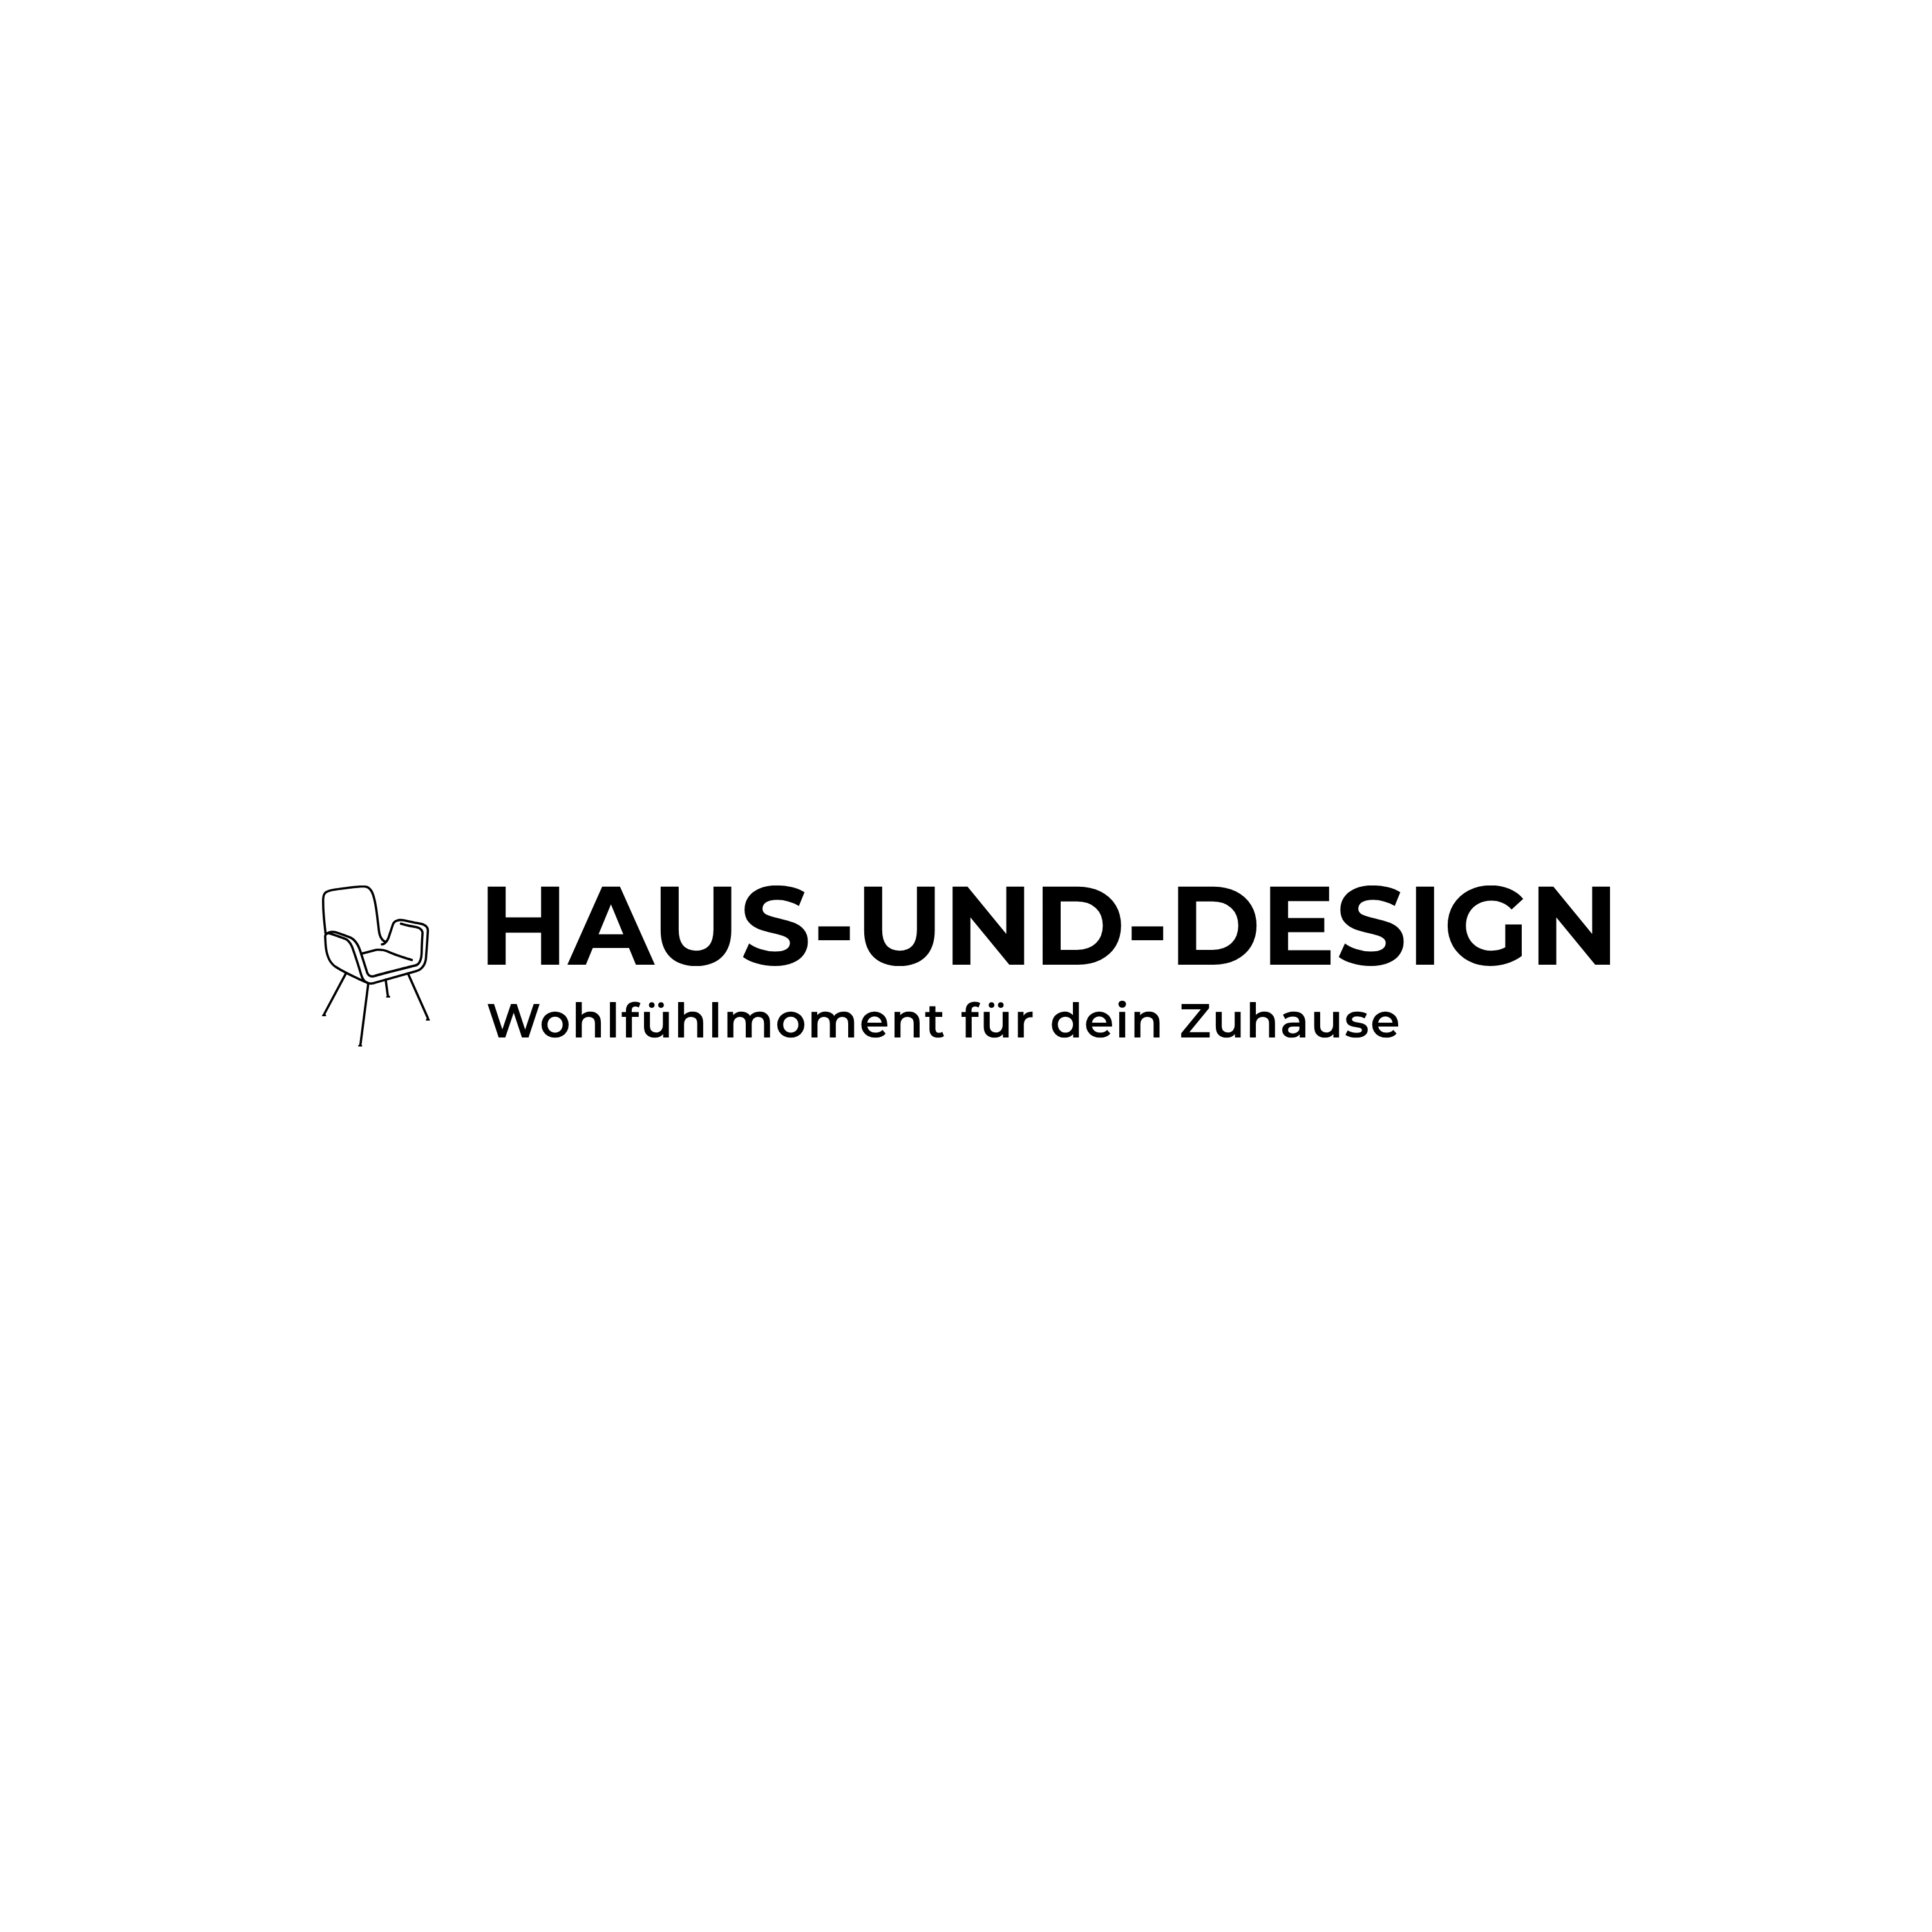 (c) Haus-und-design.de